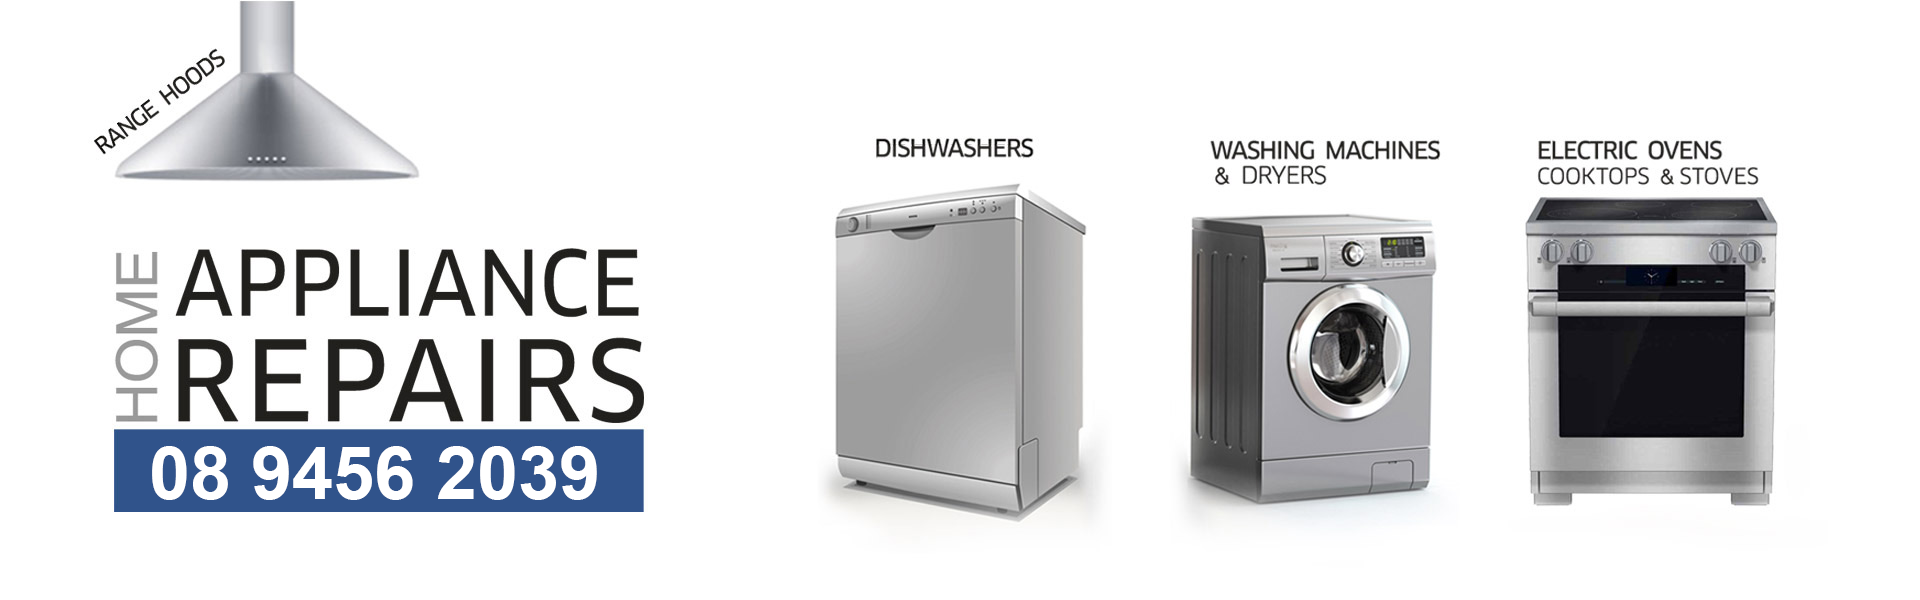 Appliance Repair Perth - repair or replace dishwasher